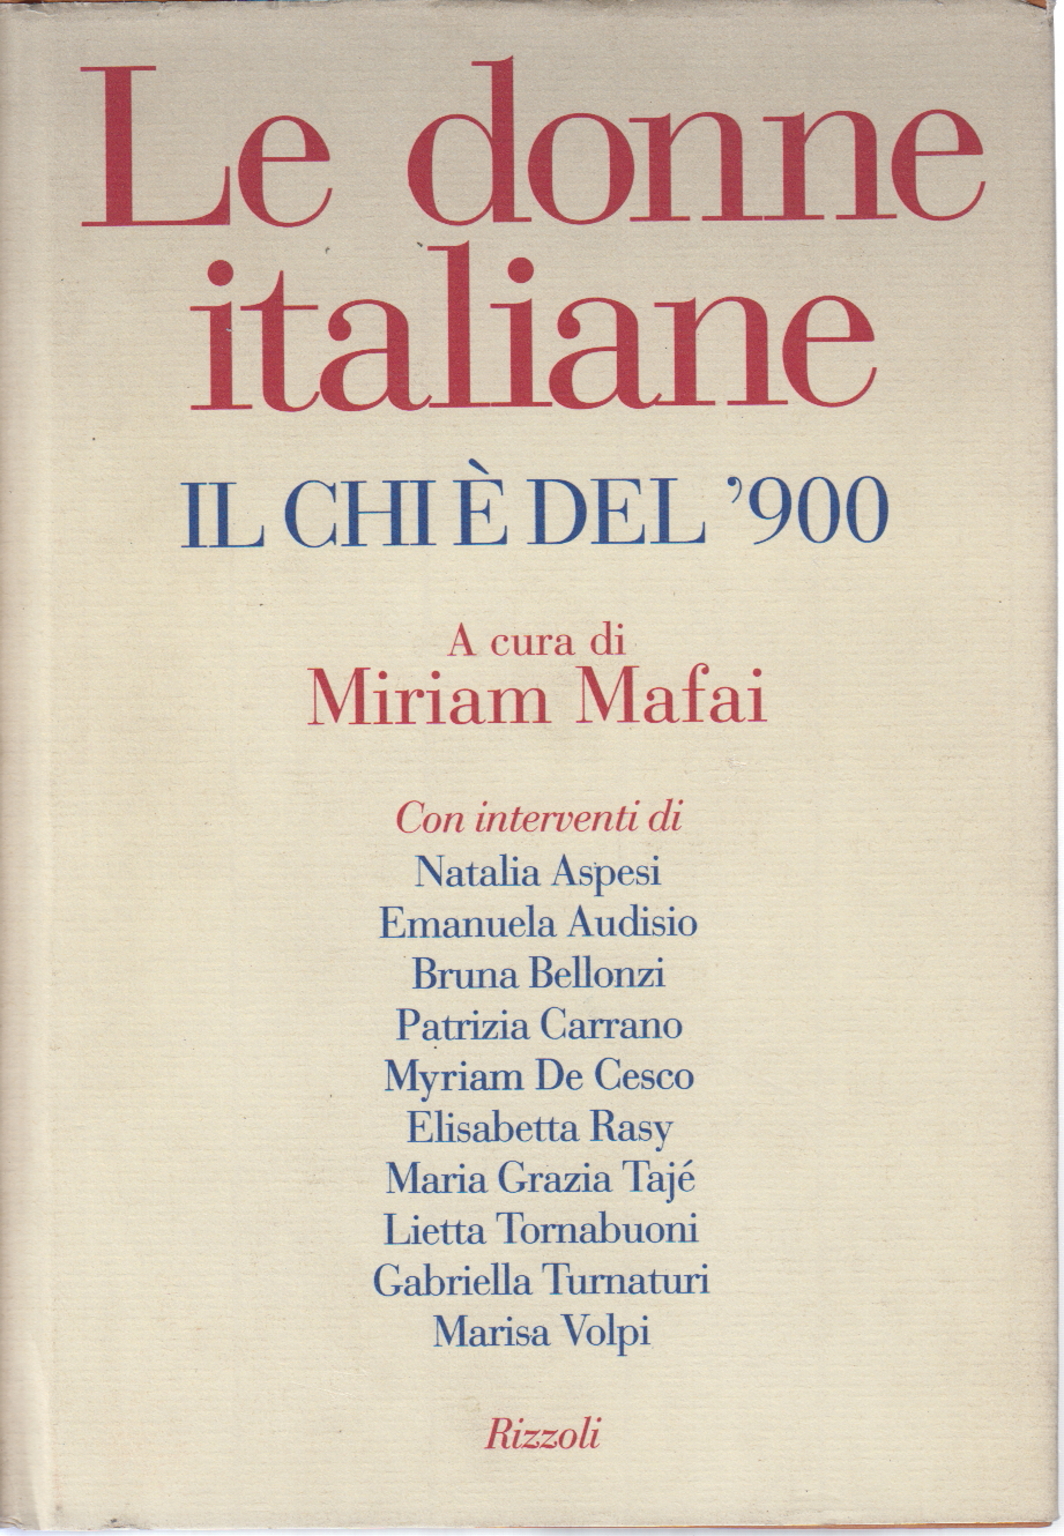 Les femmes italiennes, Miriam Mafai